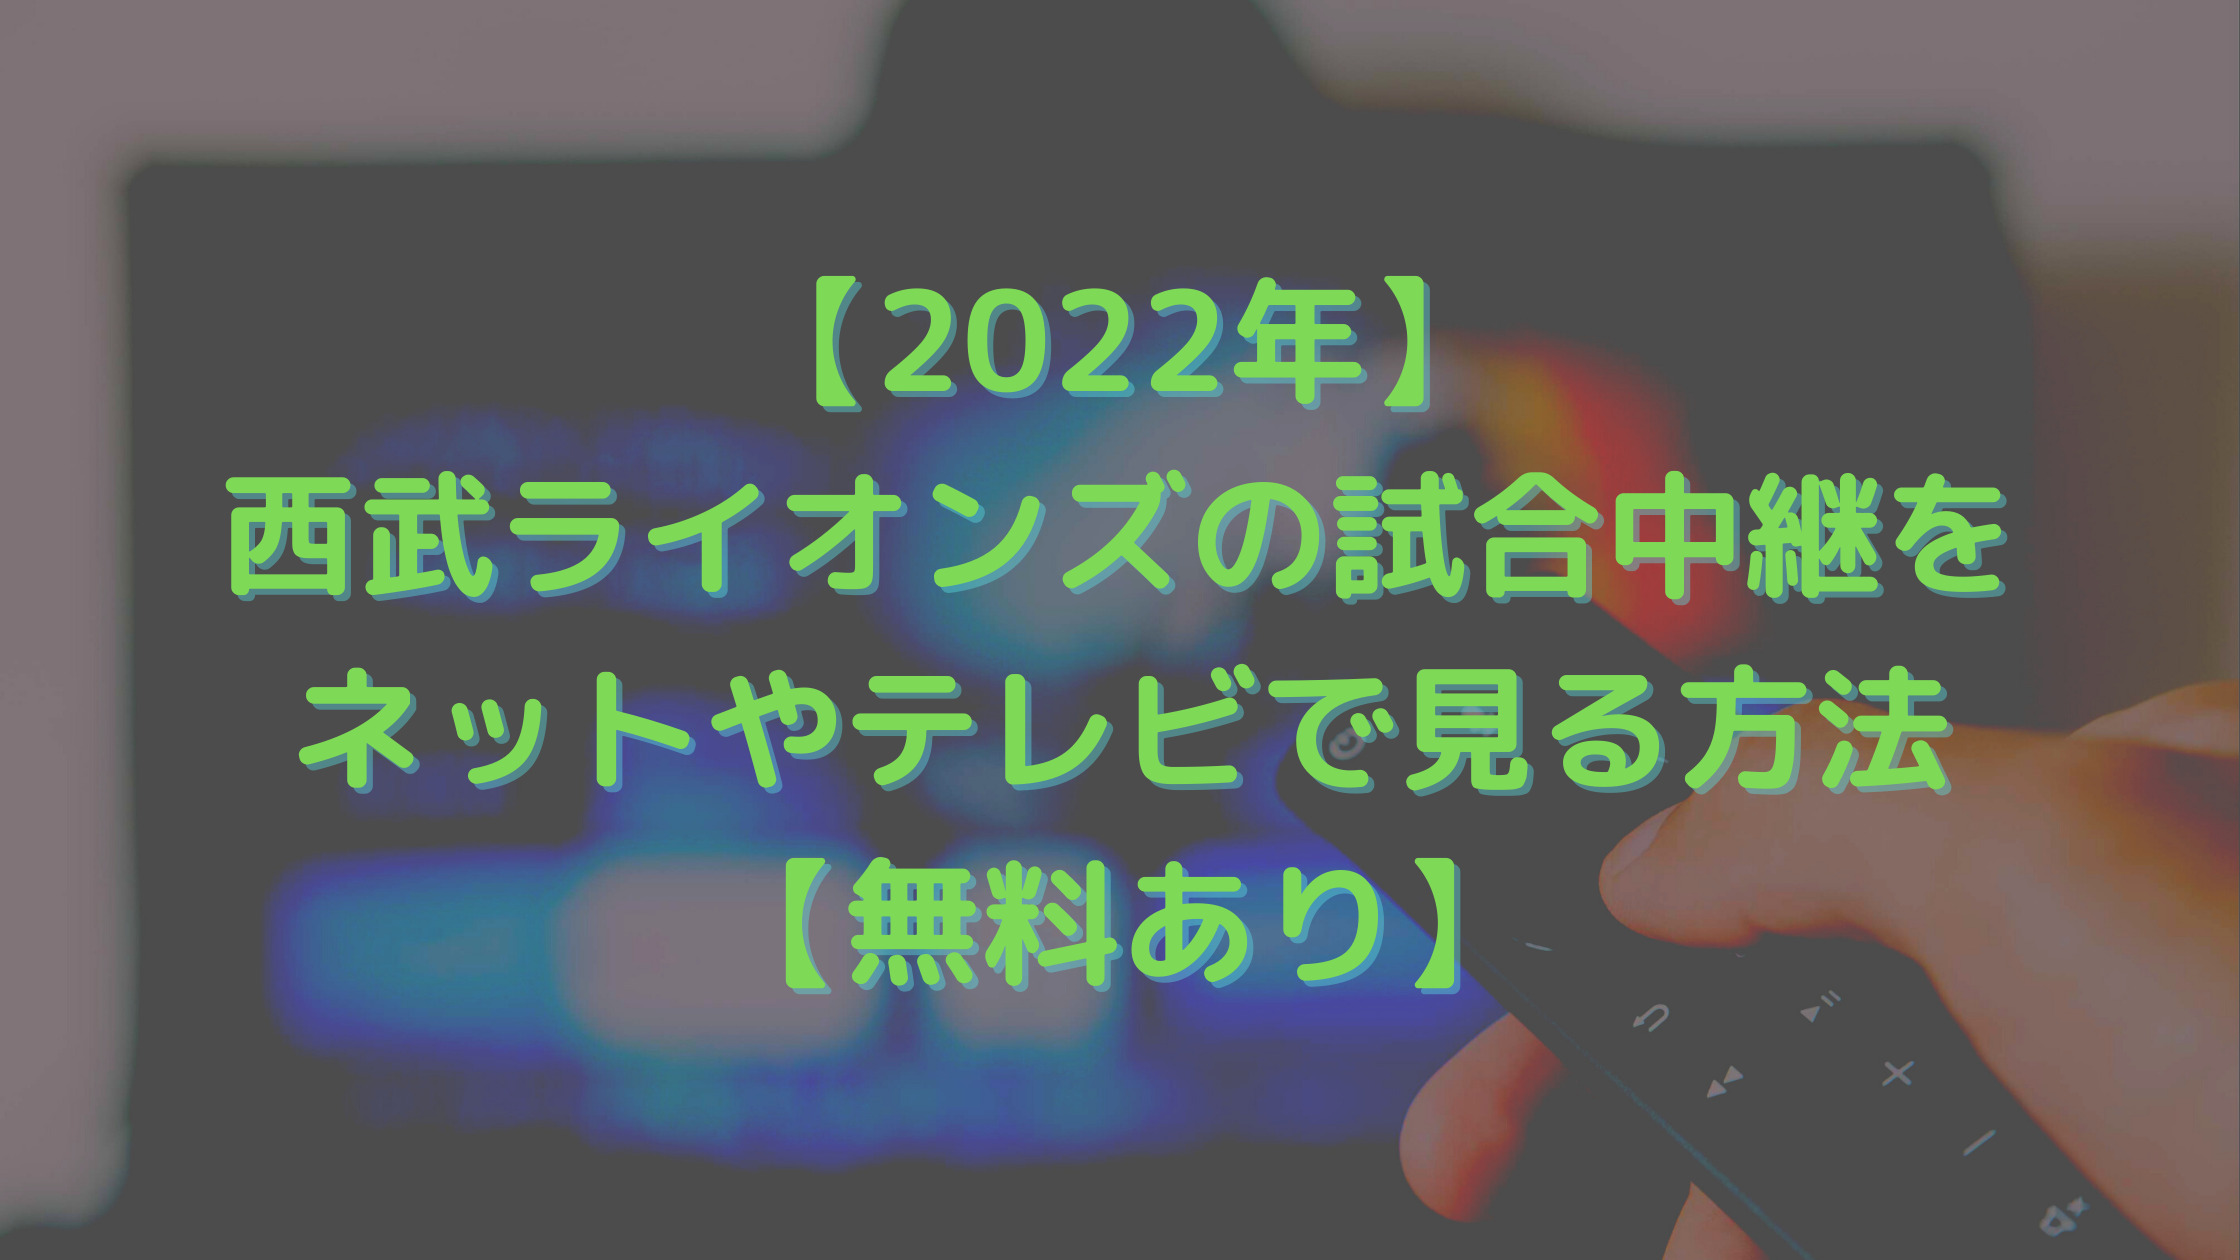 【2022年】西武ライオンズの試合中継をネットやテレビで見る方法【無料あり】